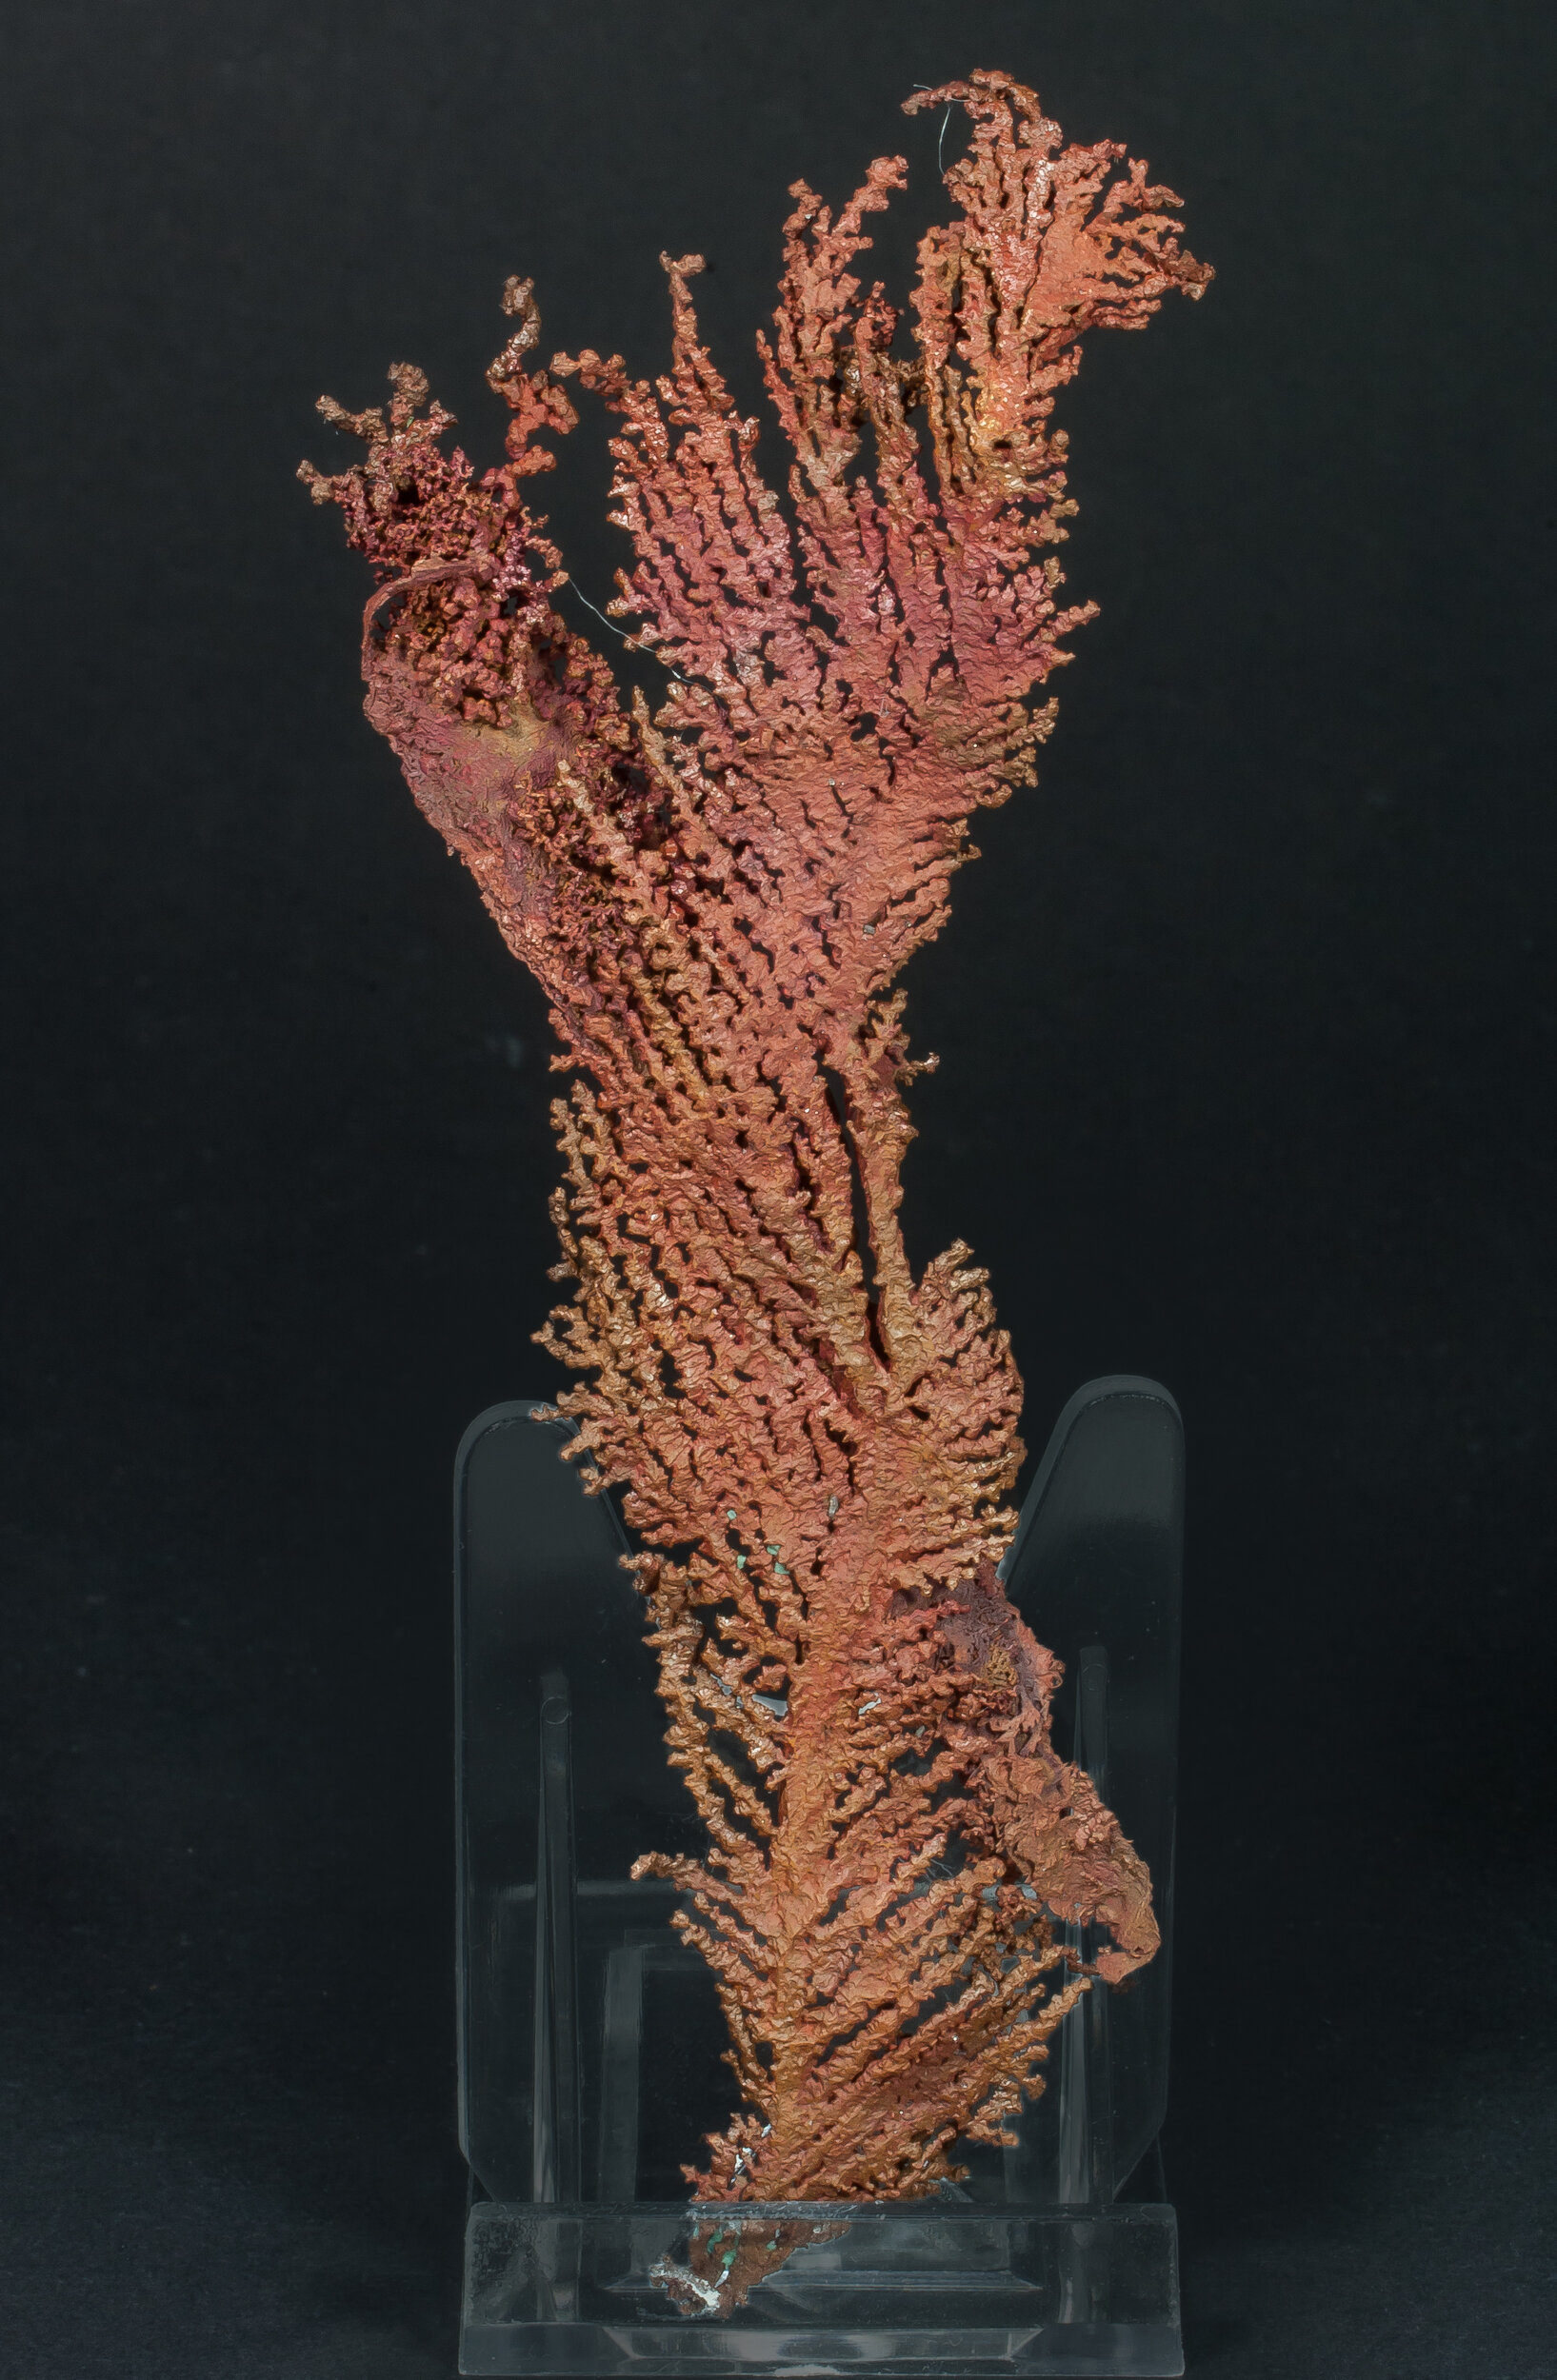 specimens/s_imagesAQ1/Copper-TXF91AQ1f.jpg